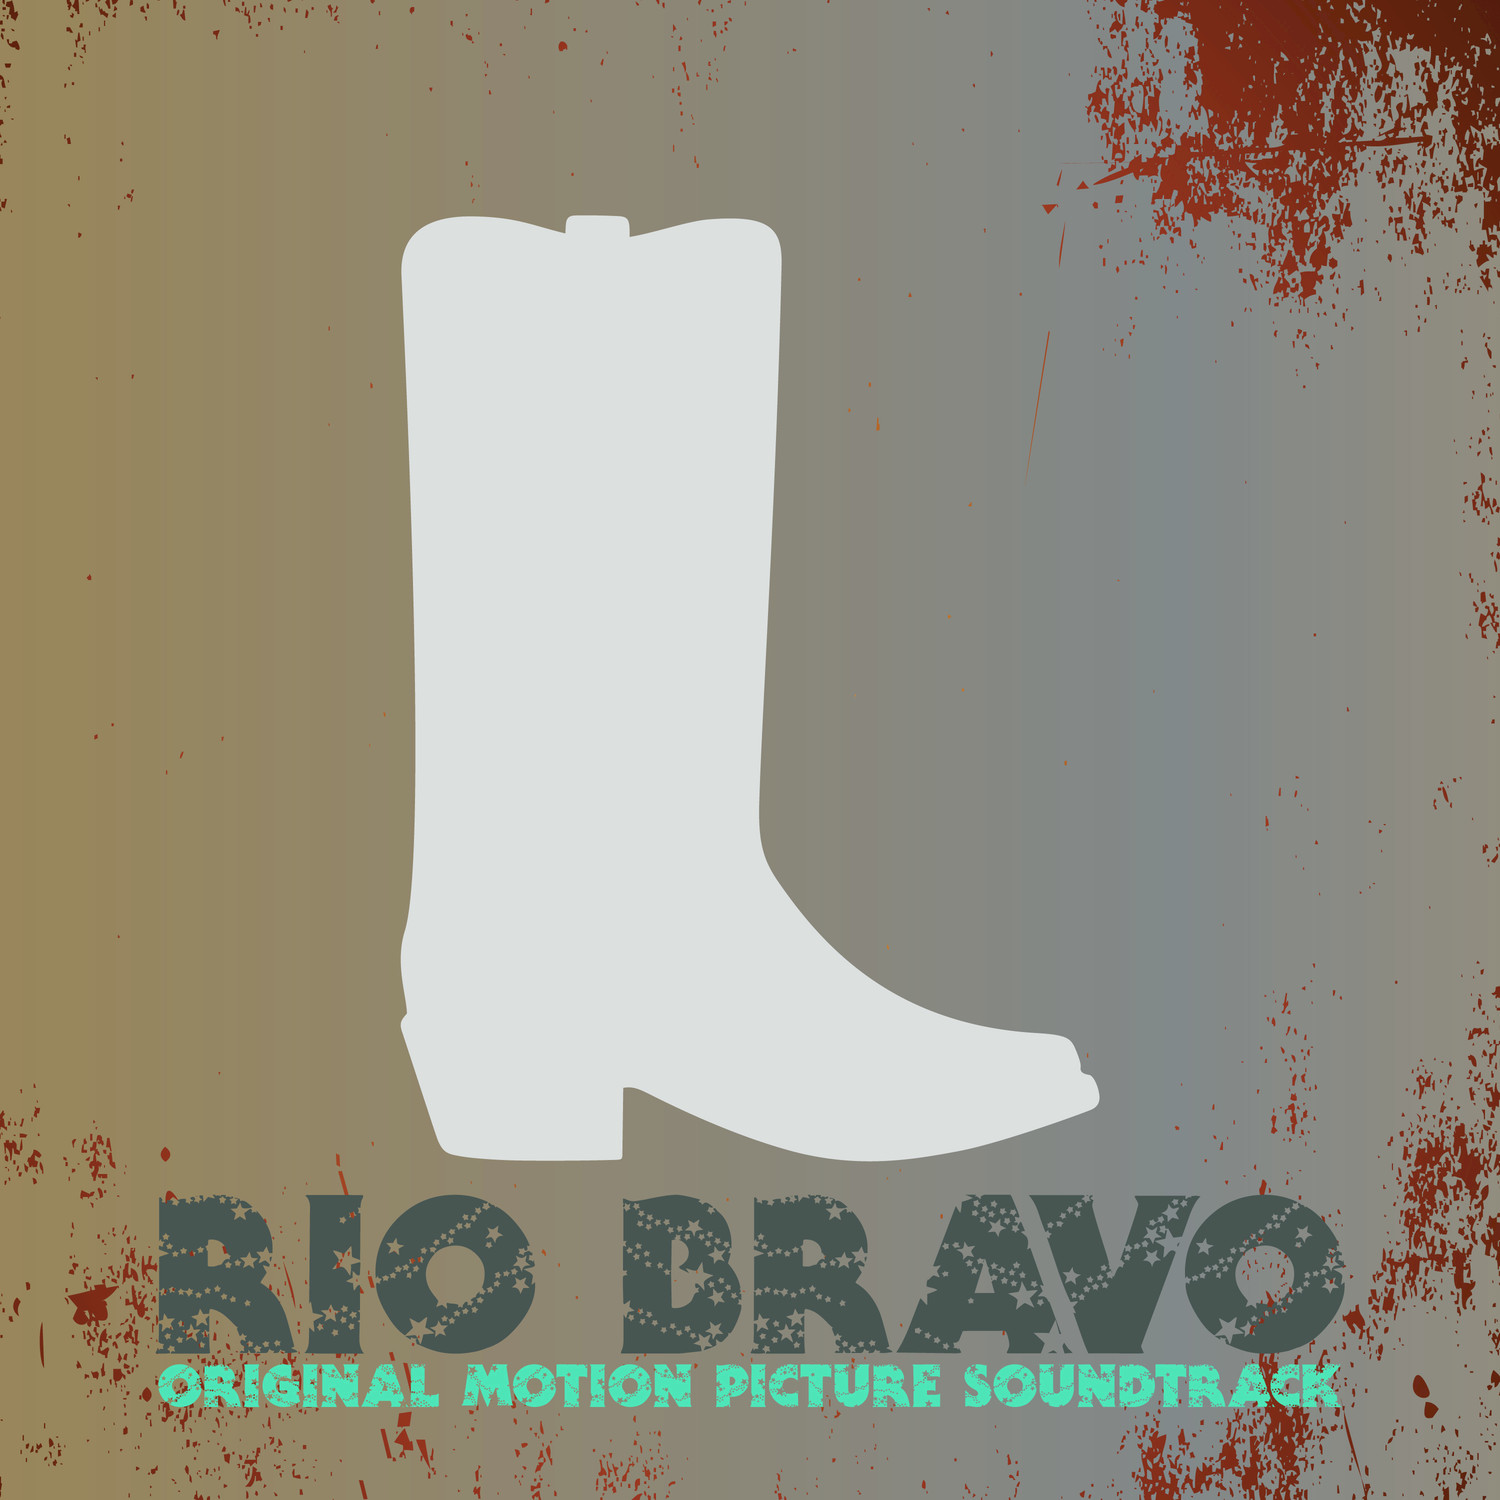 Rio Bravo (Studio Suite)